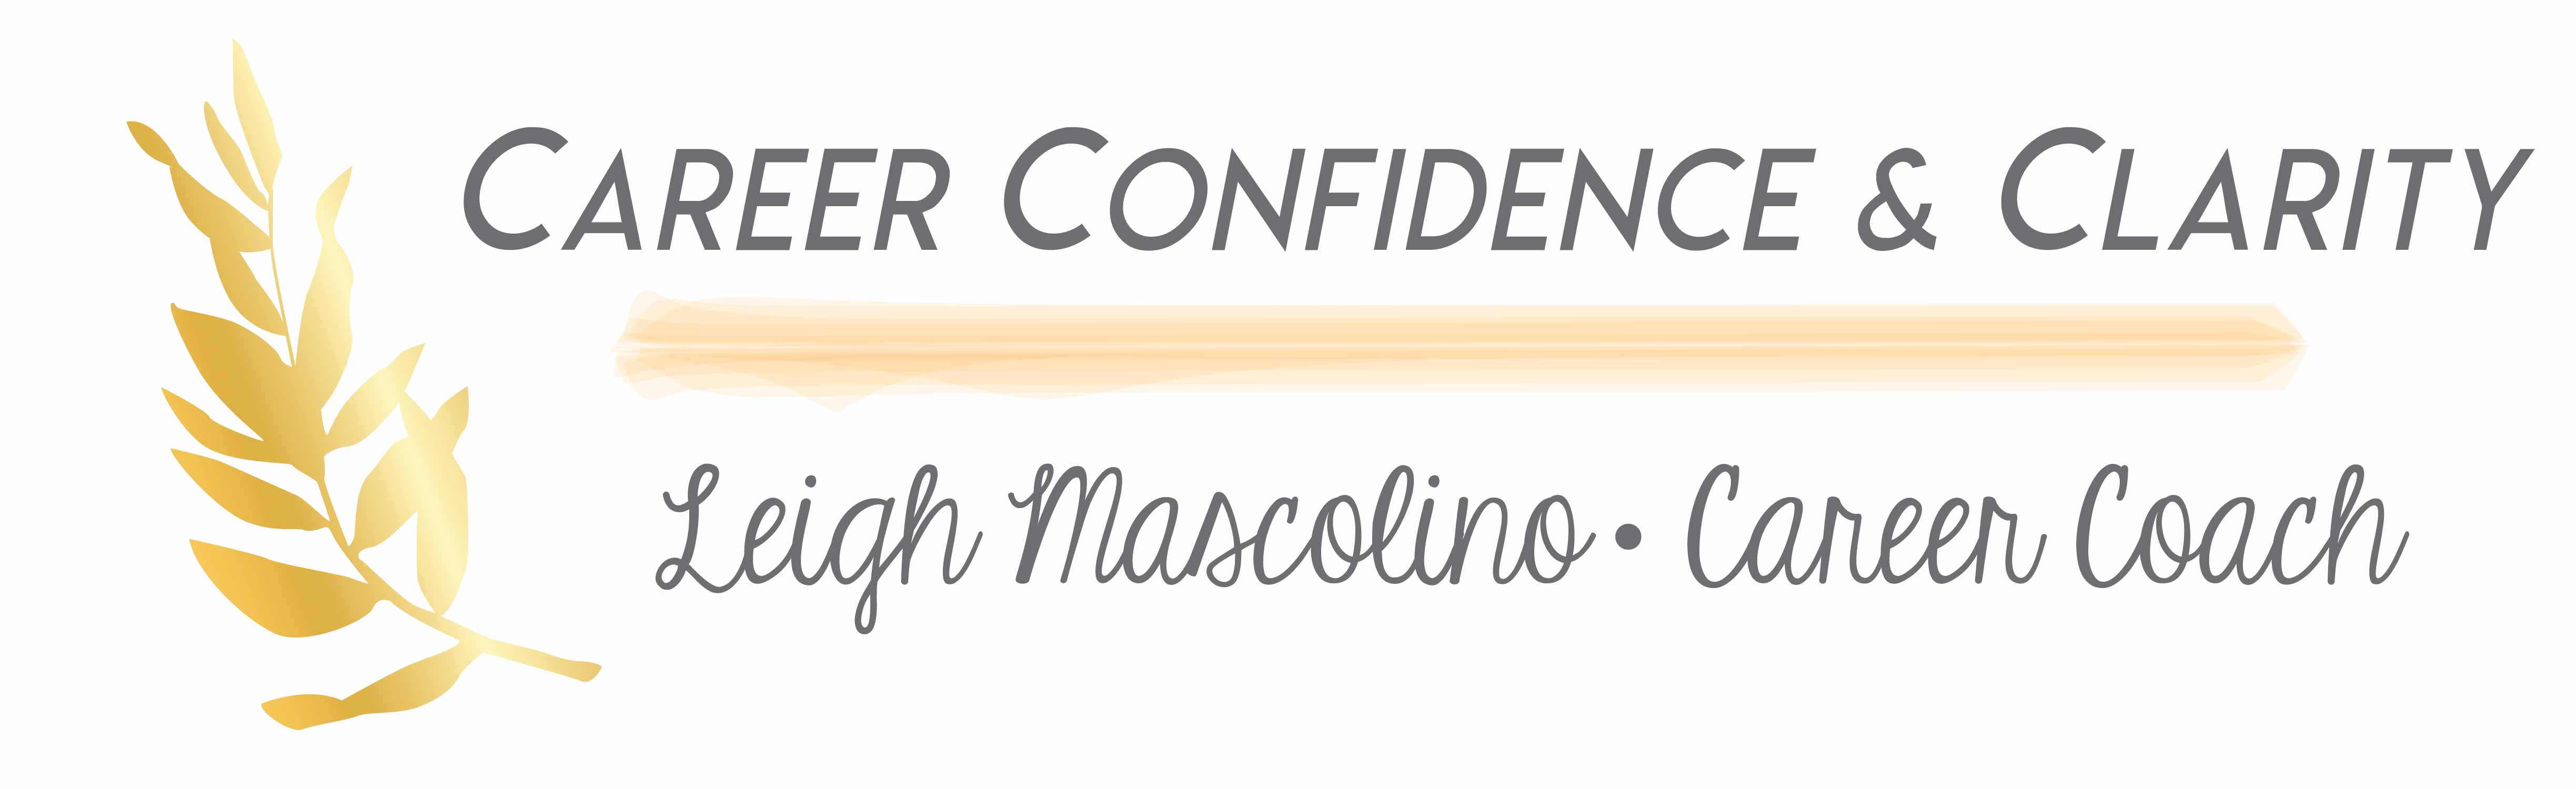 Career Confidence & Clarity Logo